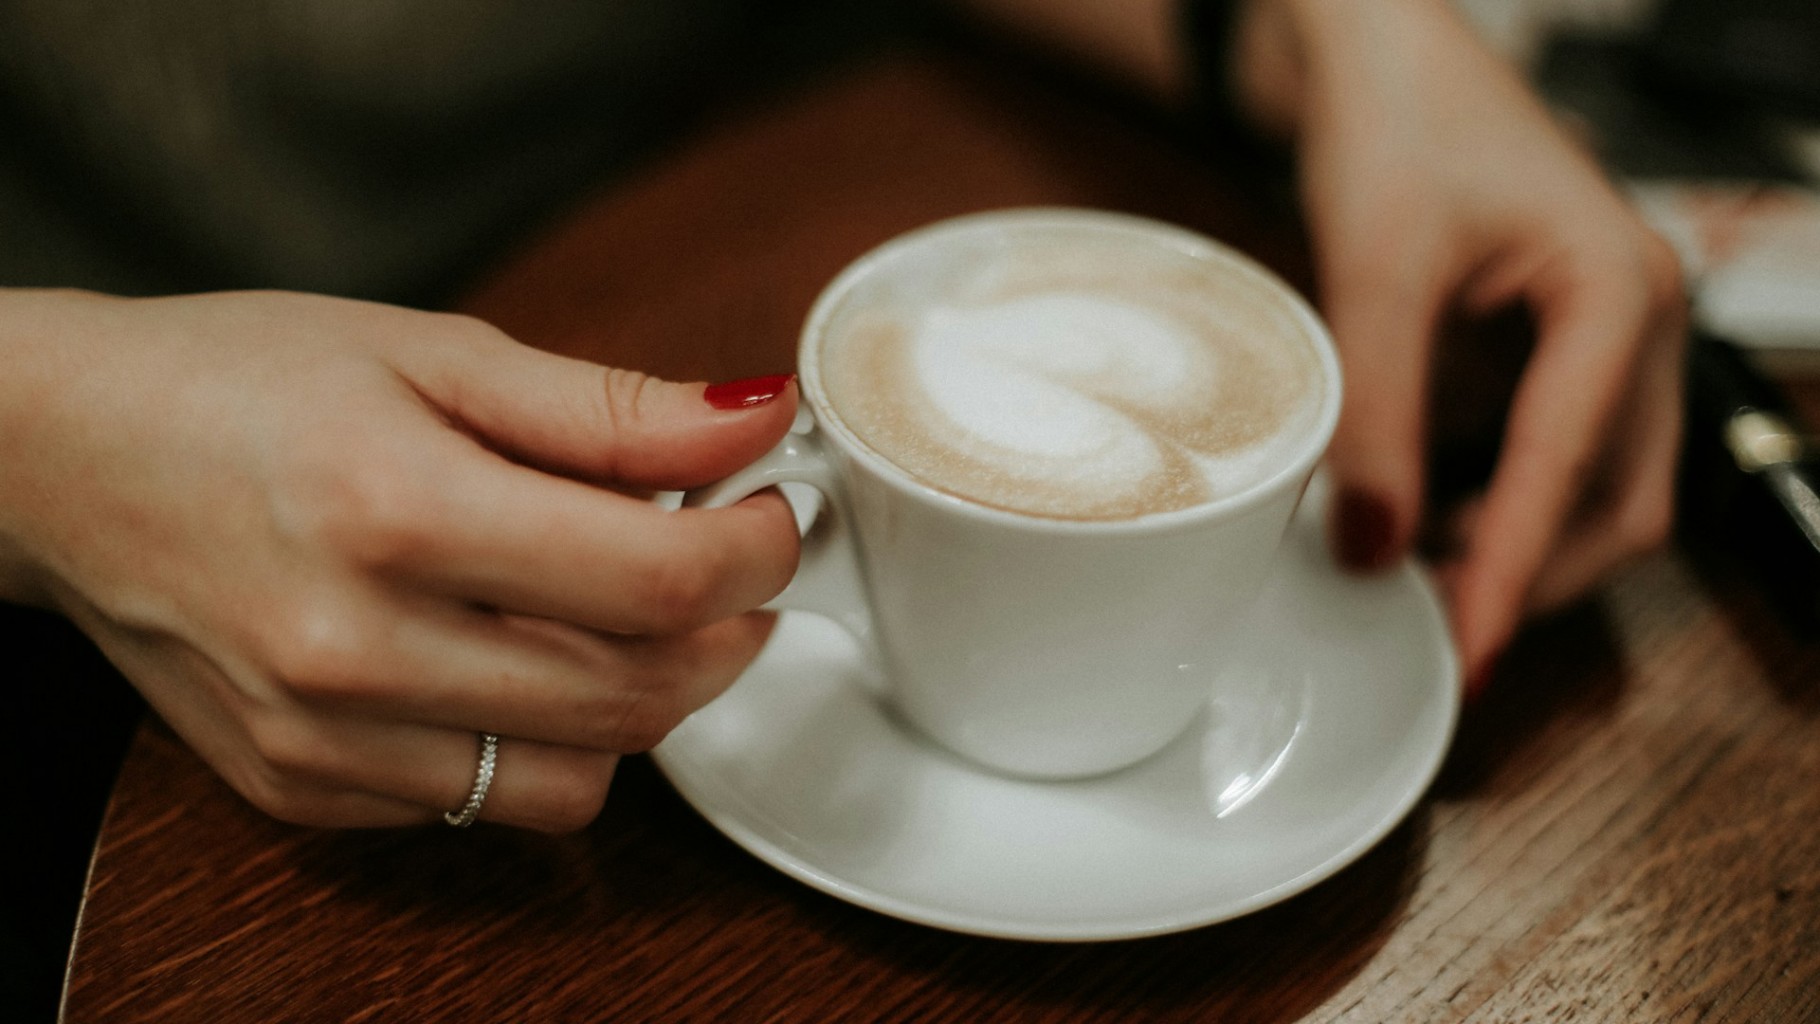 ดื่มกาแฟช่วงไหนดีที่สุด เช้า-สาย-บ่าย หรือเย็น ?